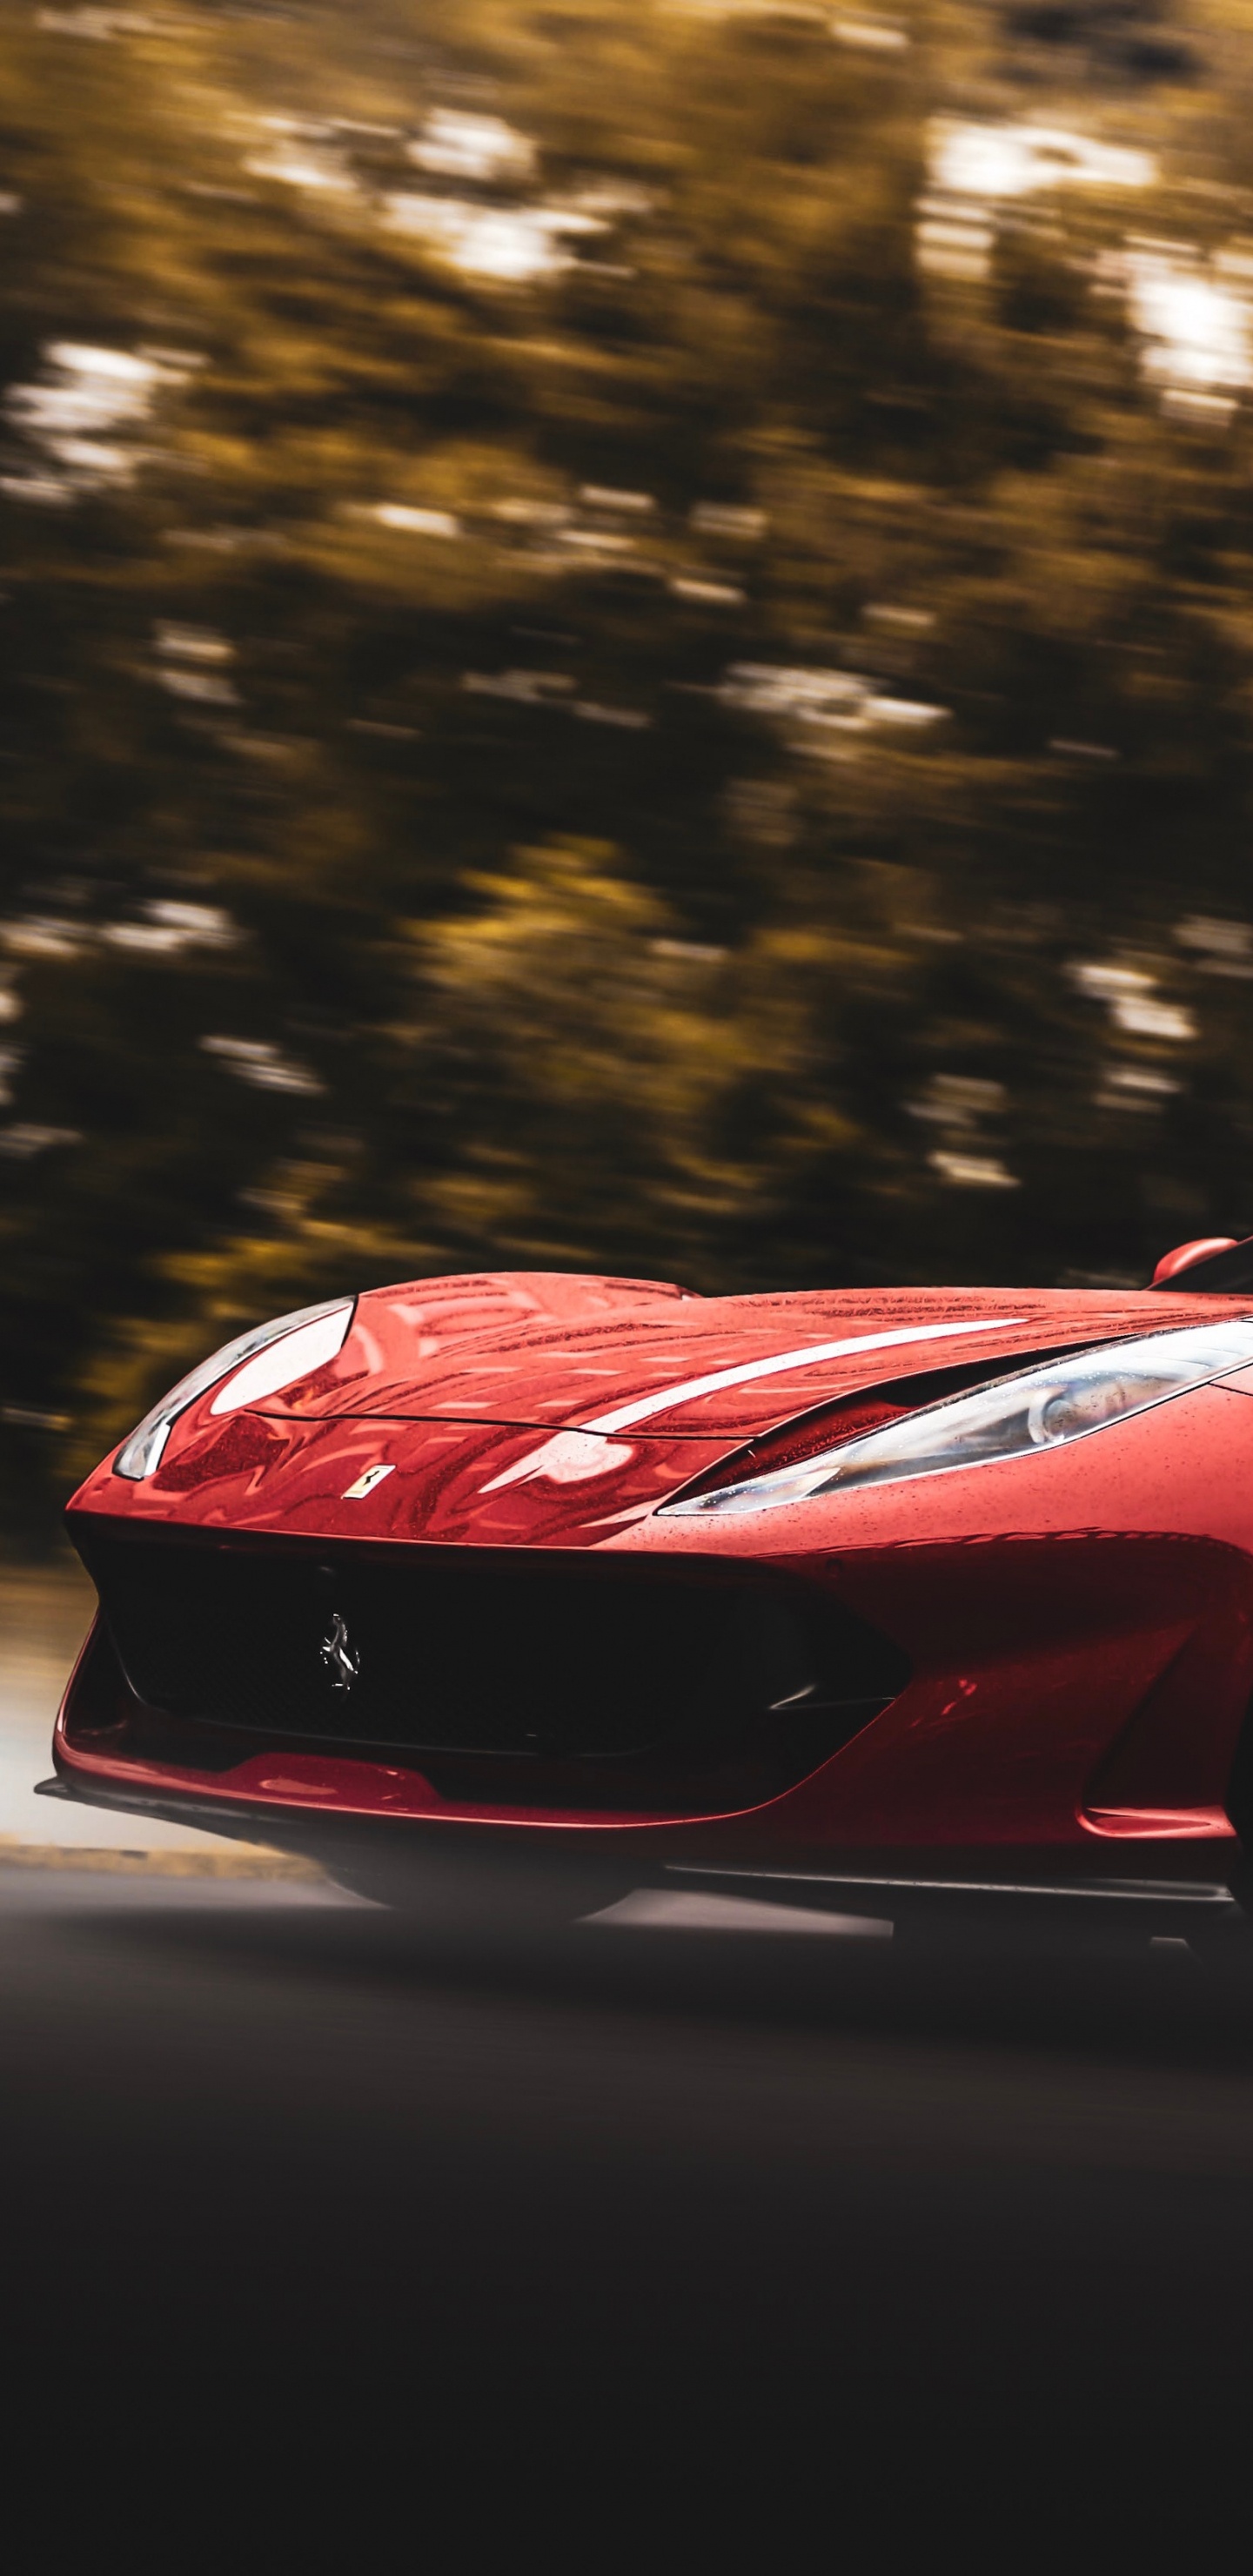 Ferrari 458 Italia Rojo en la Carretera Durante el Día. Wallpaper in 1440x2960 Resolution